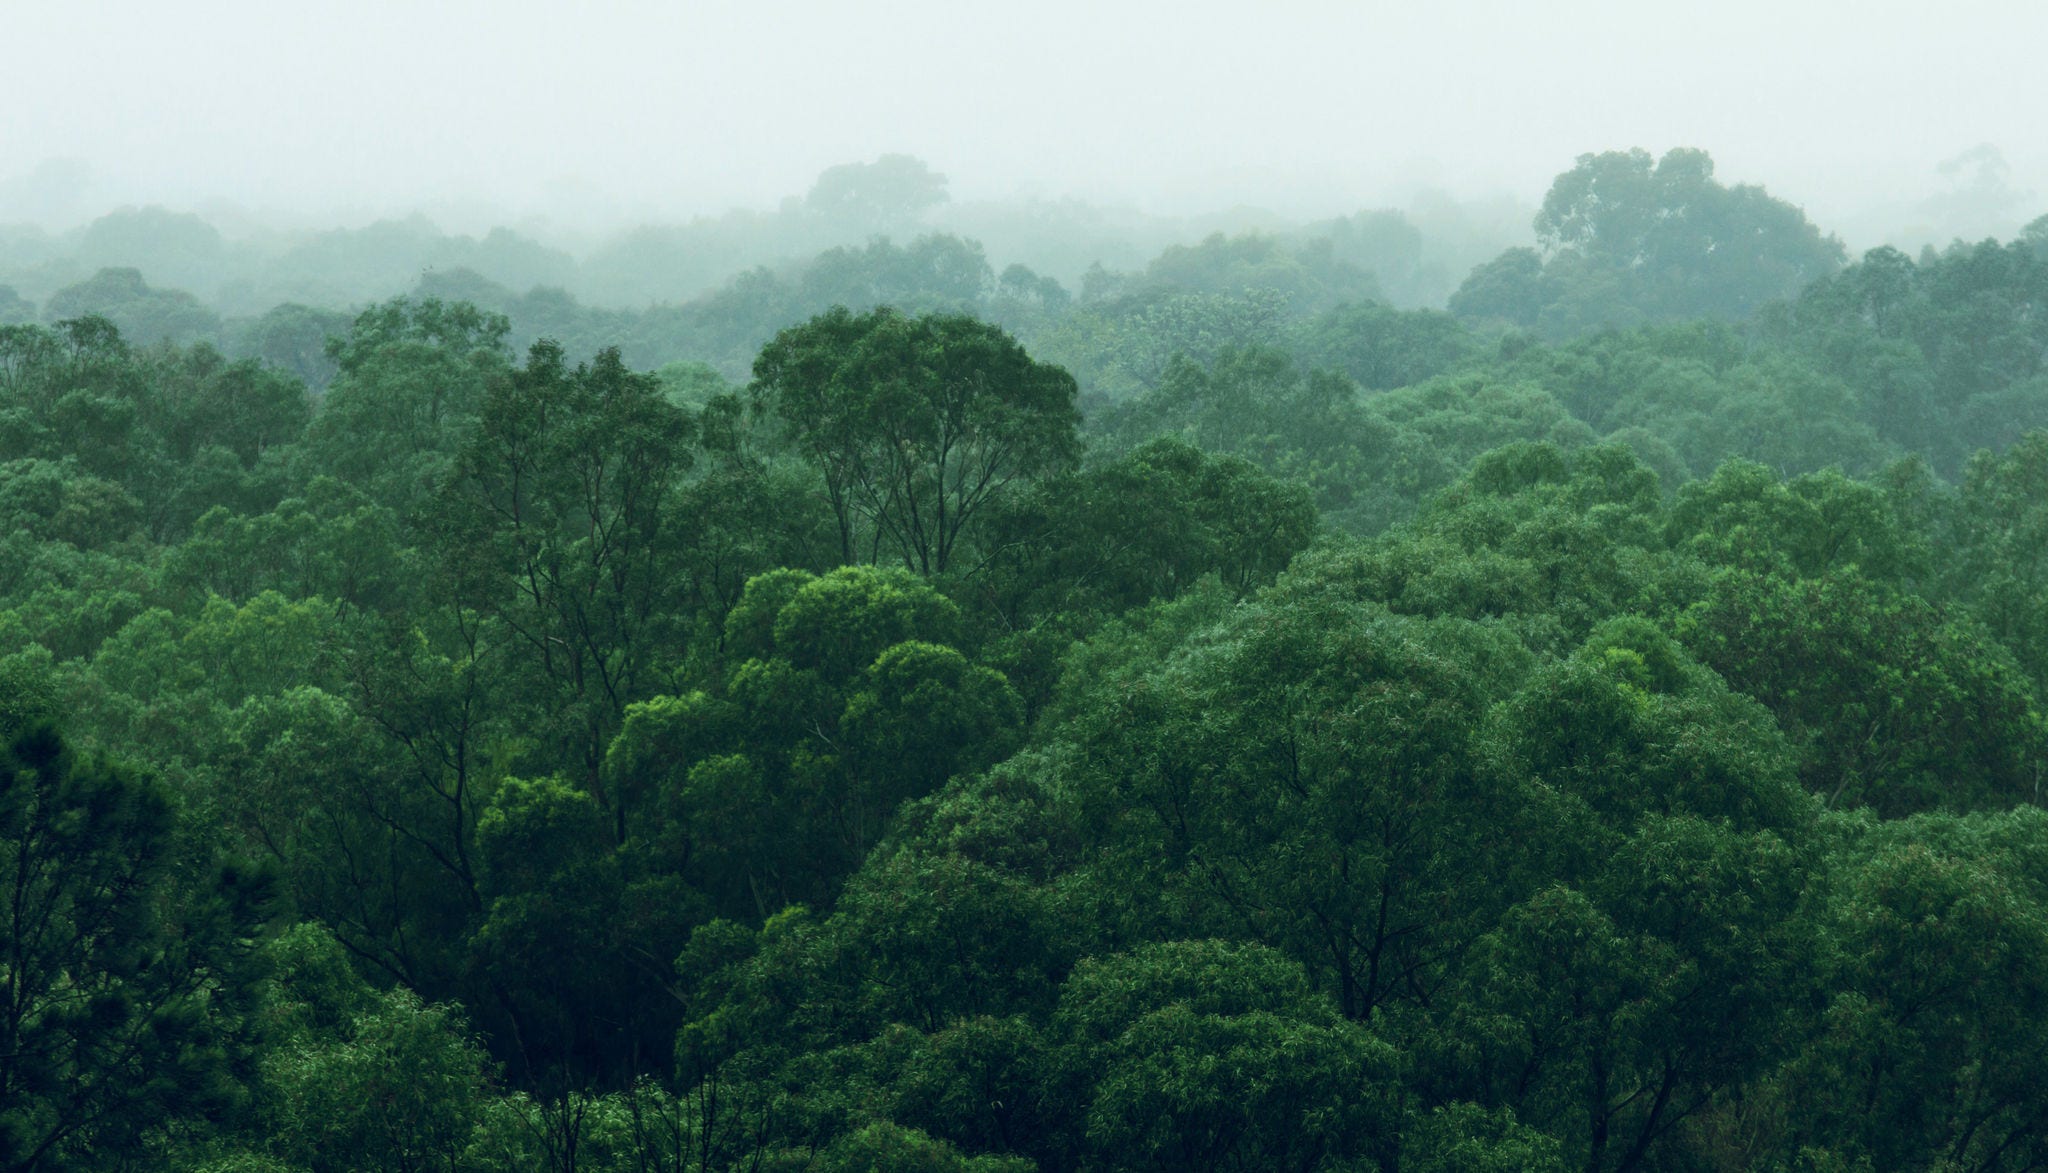 Floresta tropical biodiversa com árvores verdes brilhantes em um dia nublado